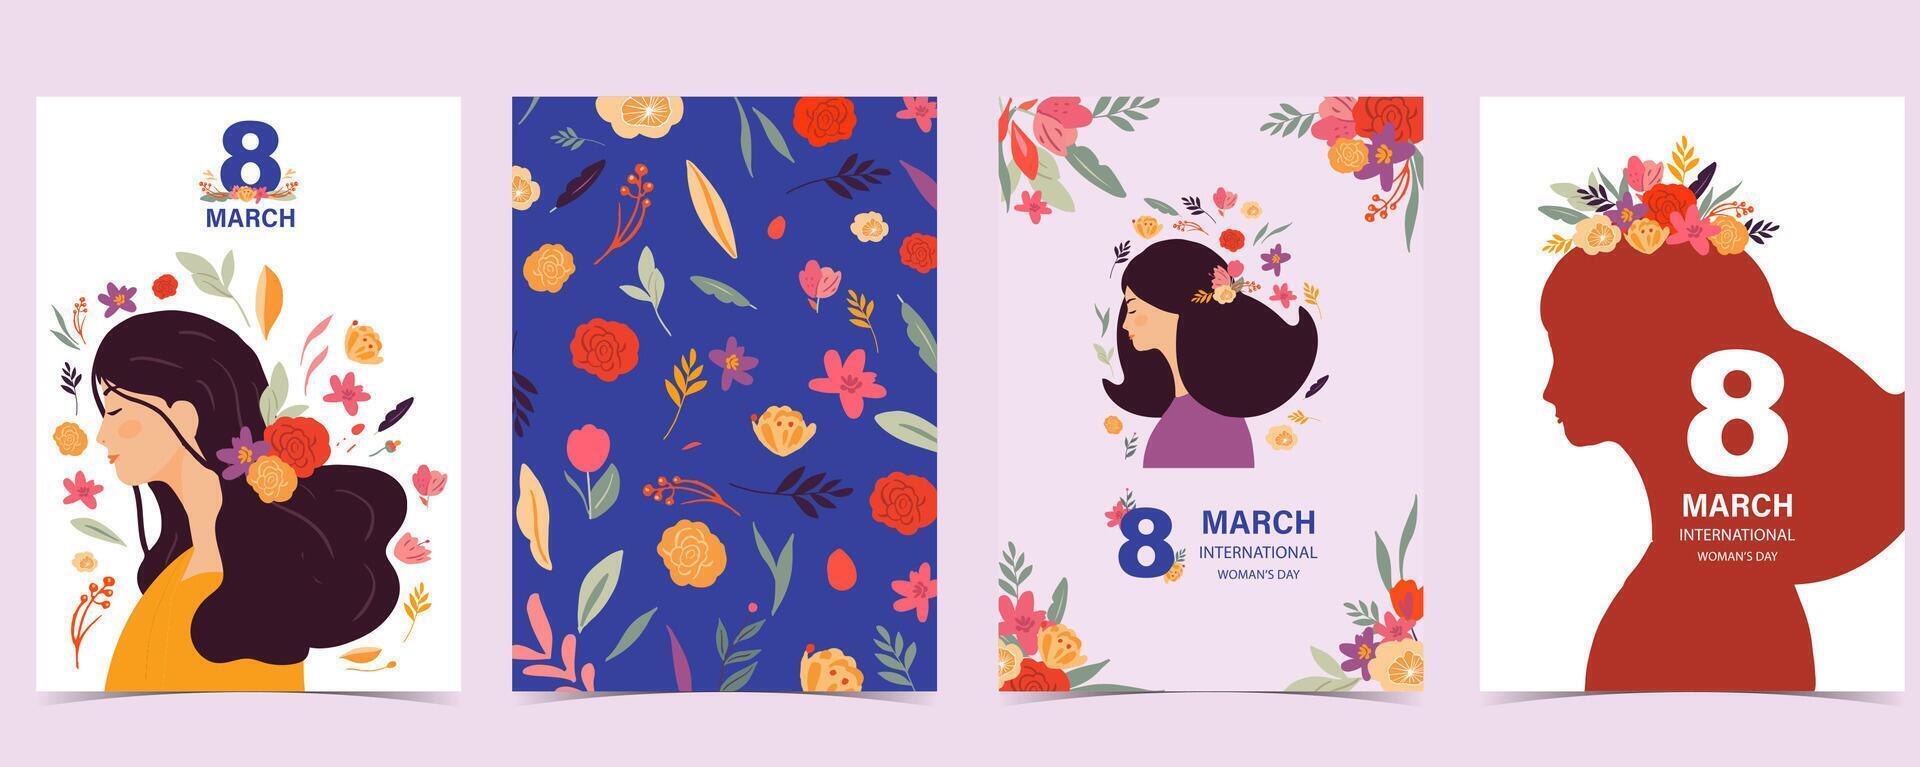 internacional mujer día con flor utilizar para vertical a4 tarjeta diseño vector